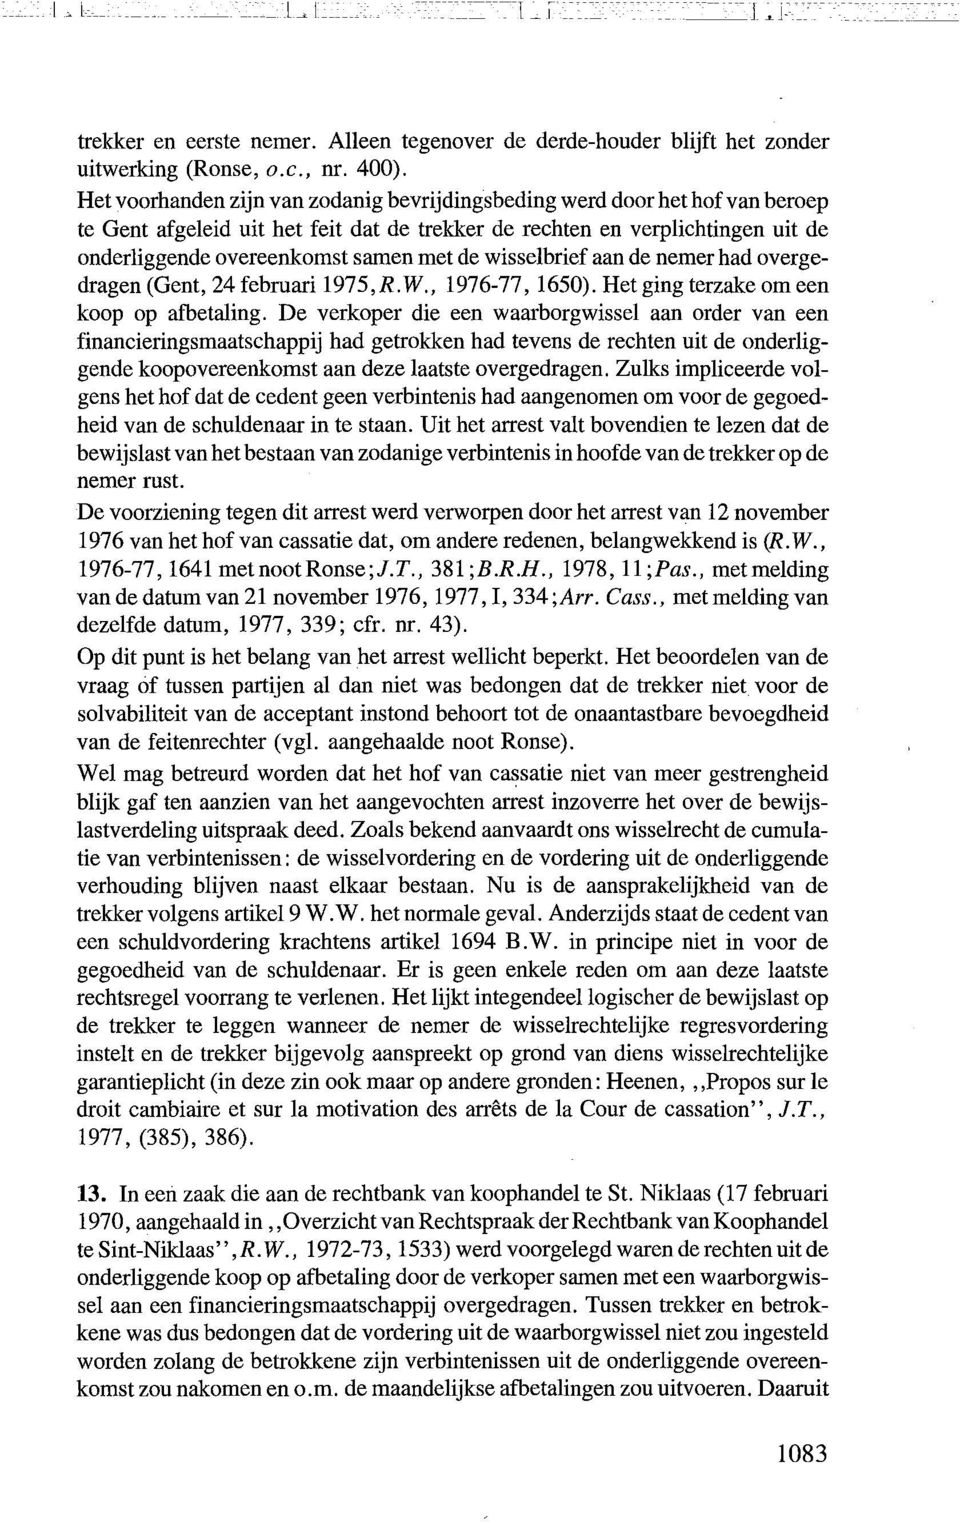 wisselbrief aan de nemer had overgedragen (Gent, 24 februari 1975,R.W., 1976-77, 1650). Het ging terzake om een koop op afbetaling.